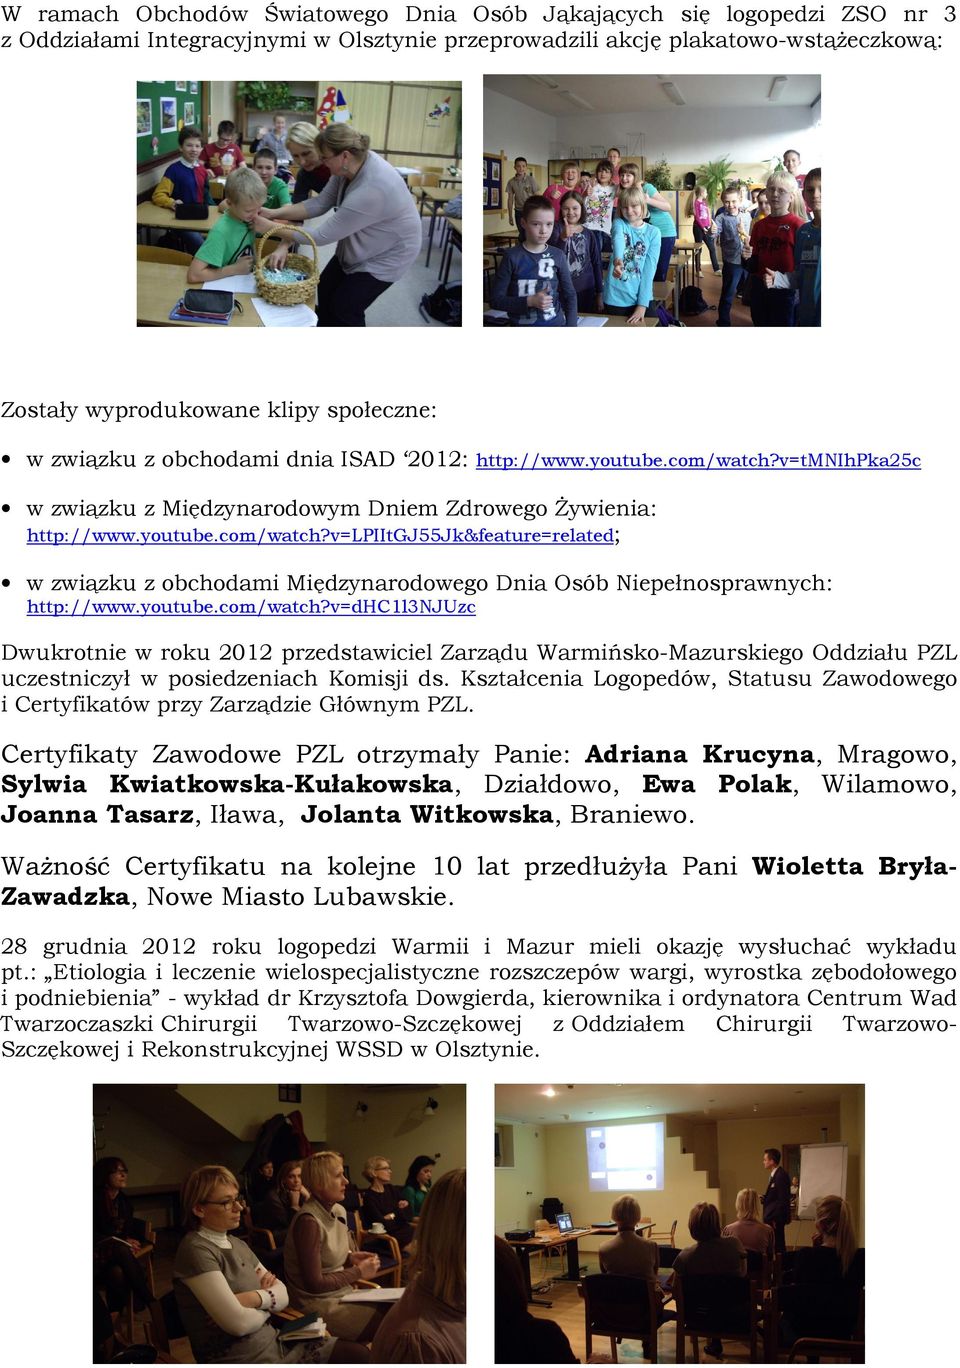 youtube.com/watch?v=dhc1l3njuzc Dwukrotnie w roku 2012 przedstawiciel Zarządu Warmińsko-Mazurskiego Oddziału PZL uczestniczył w posiedzeniach Komisji ds.